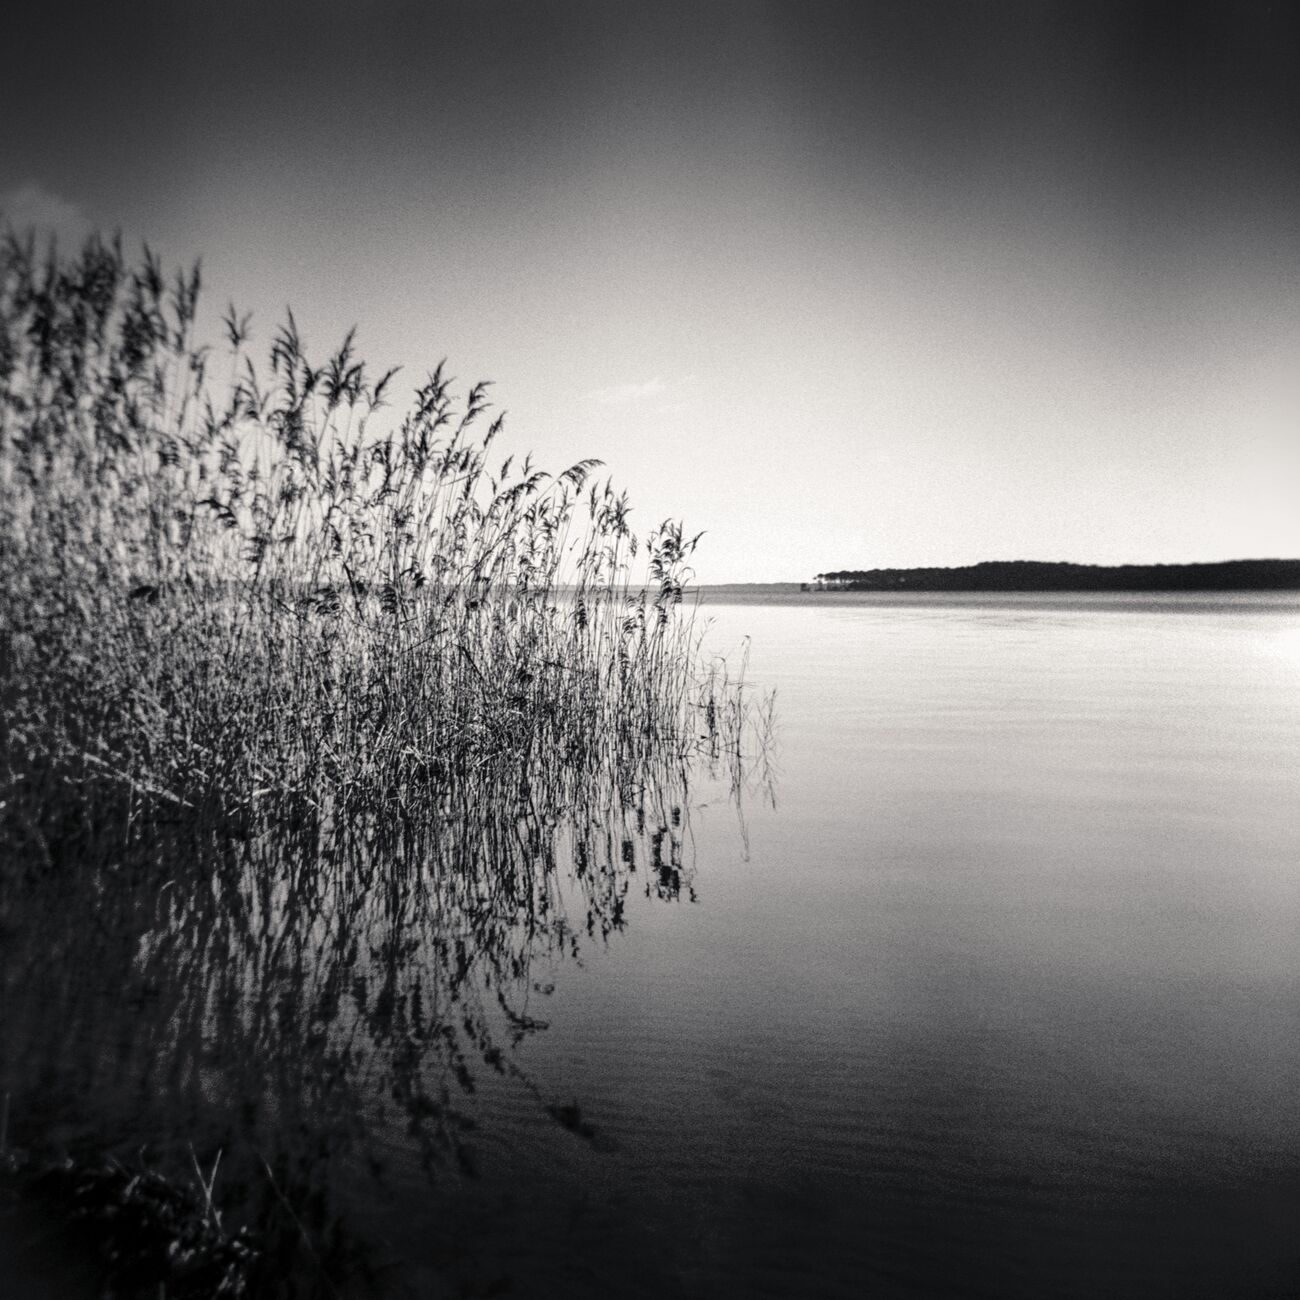 Reeds, Etude 1, Carreyre, Lacanau Lake, France. January 2021. Ref-1421 - Denis Olivier Photography